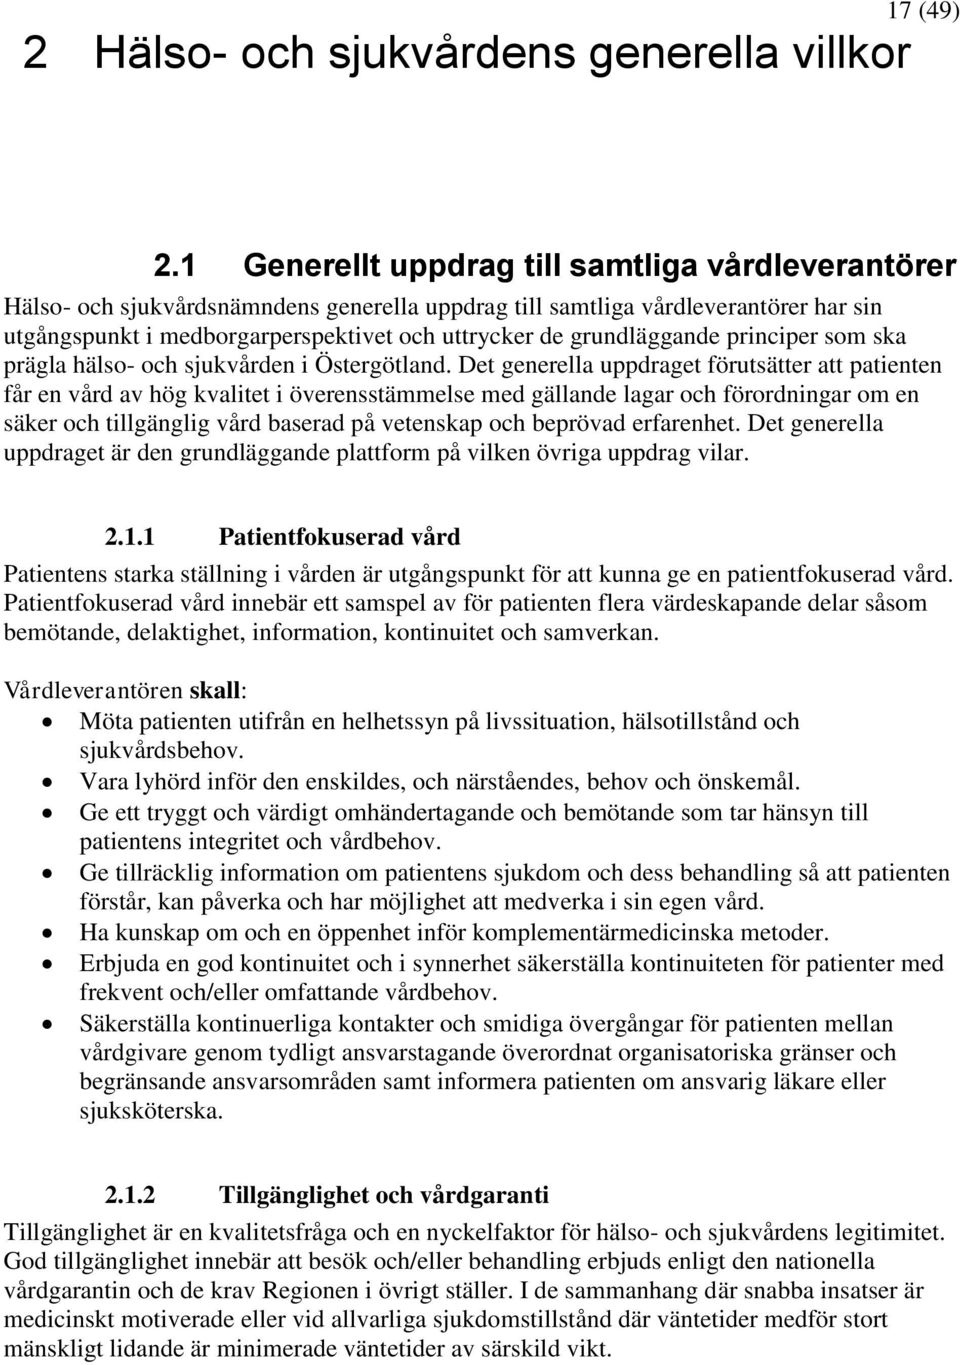 grundläggande principer som ska prägla hälso- och sjukvården i Östergötland.